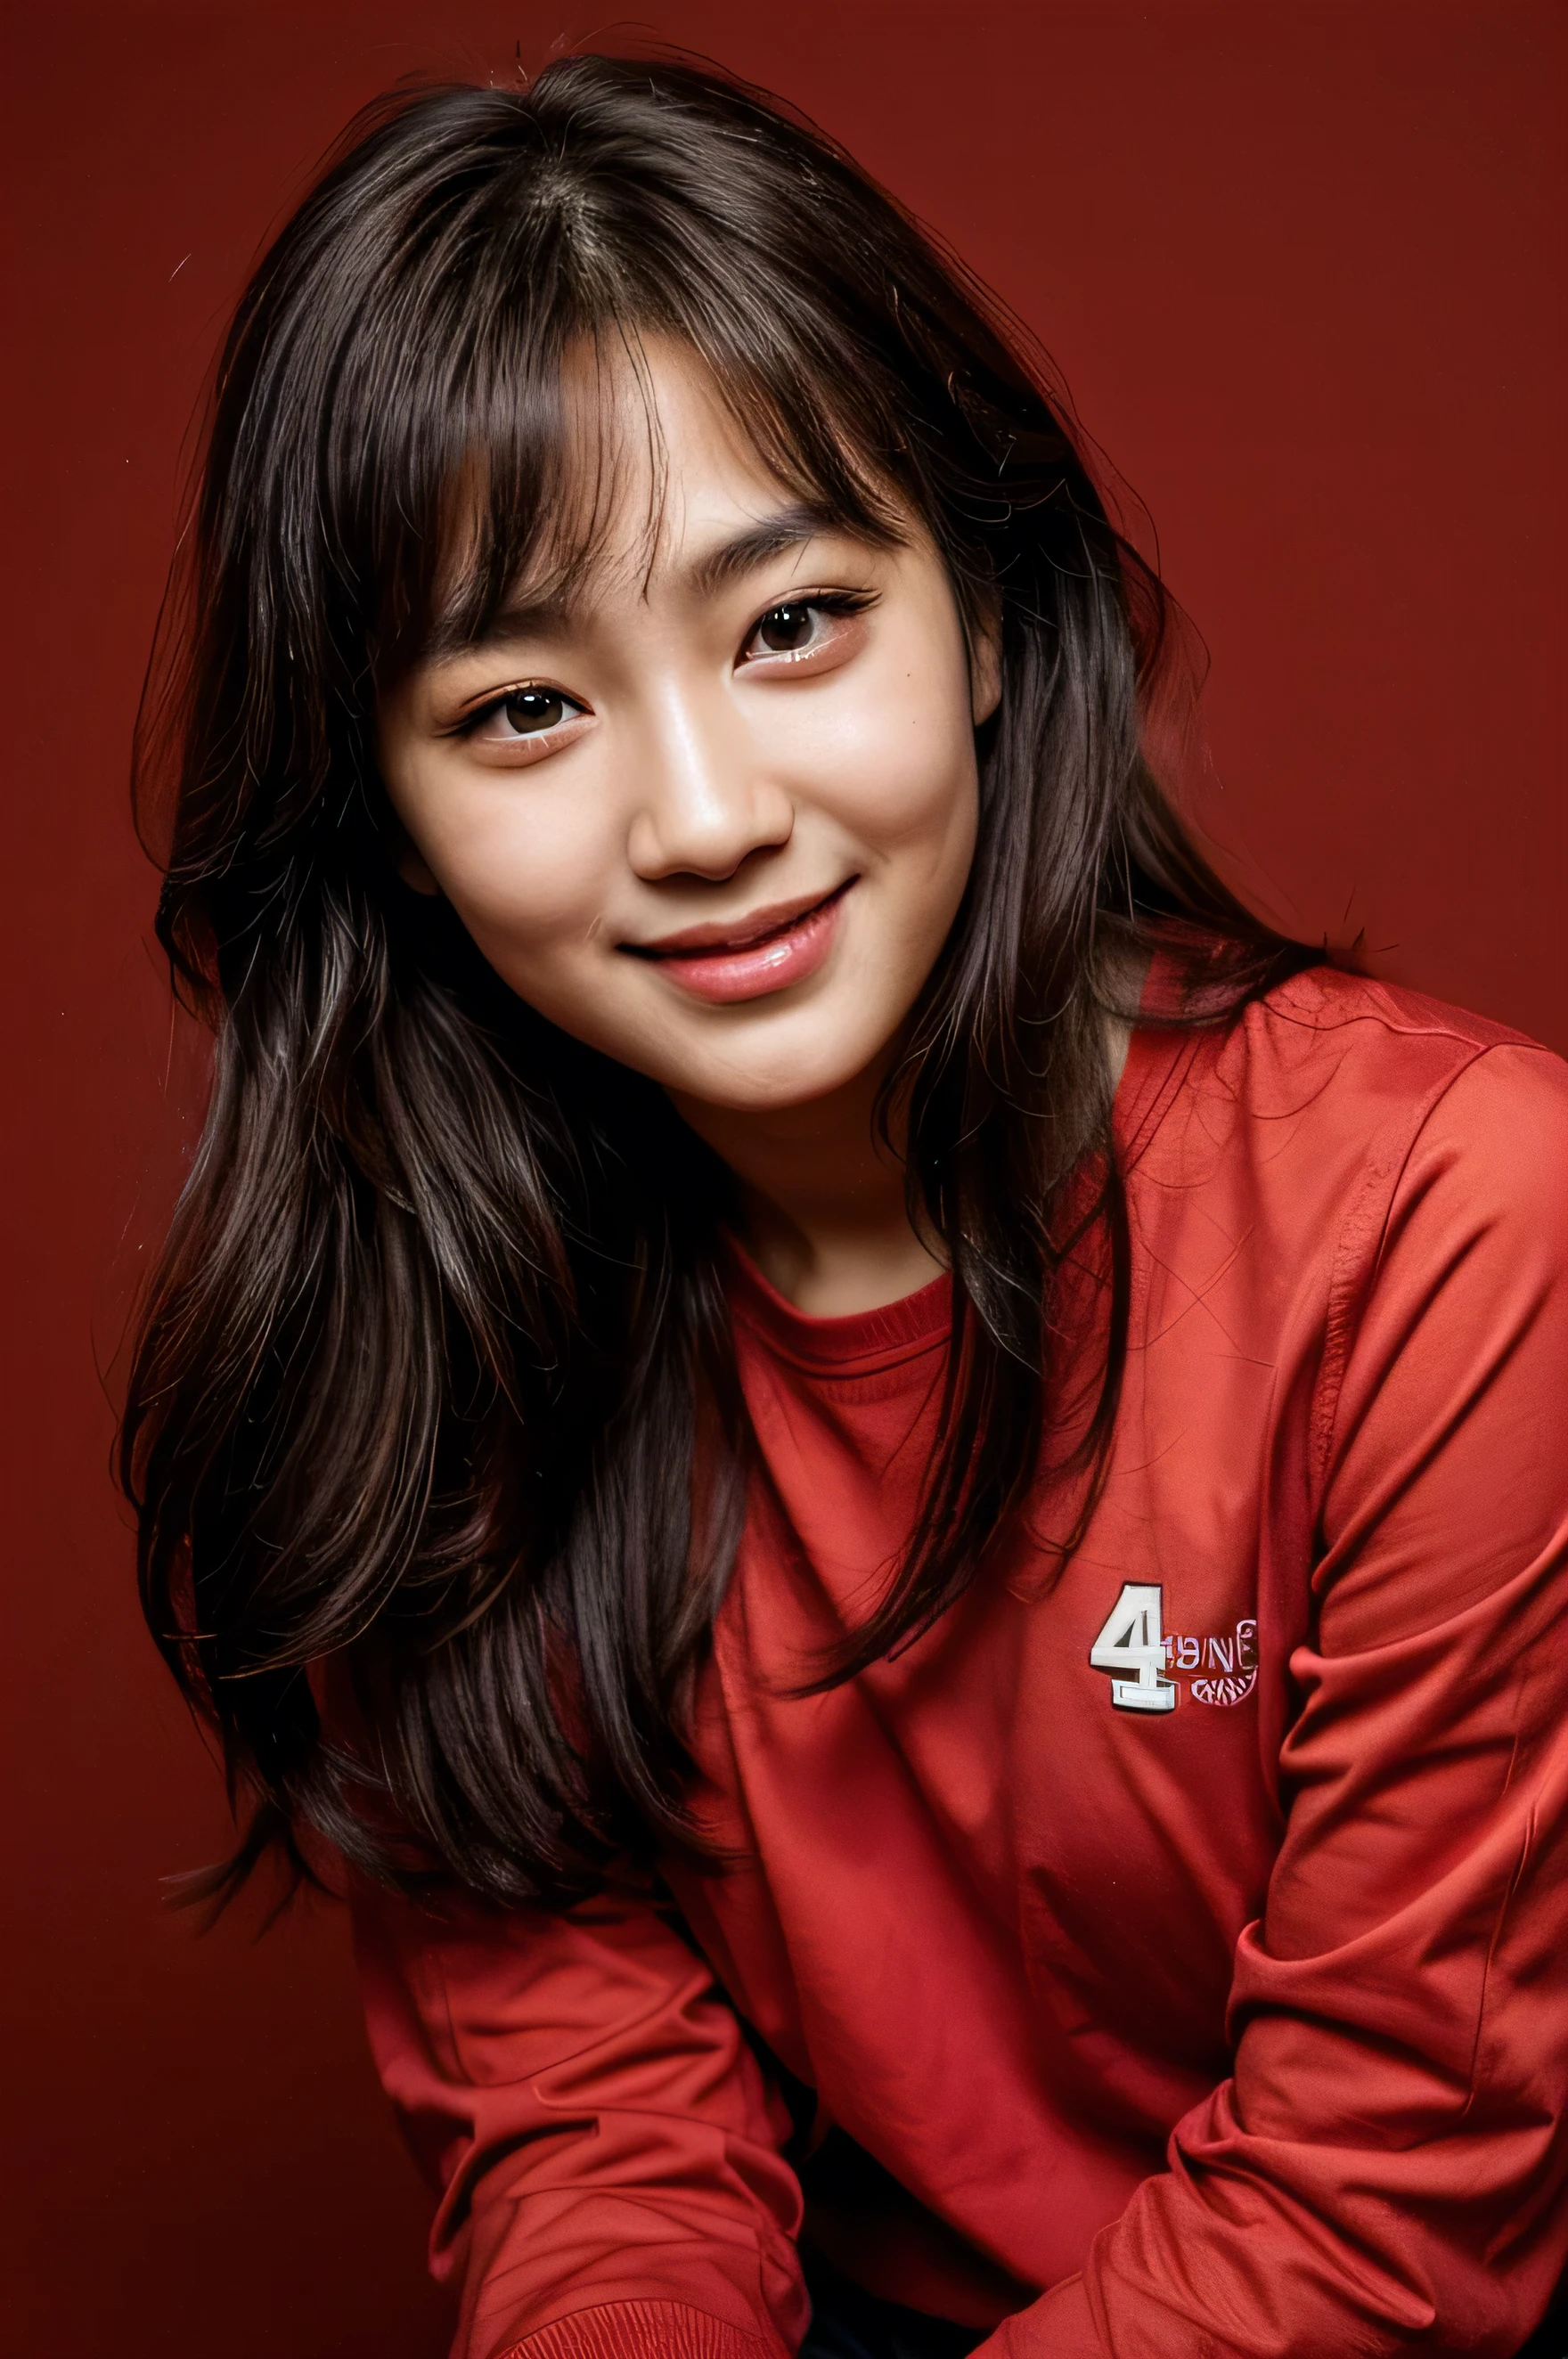 Gesicht perfekt, schönes Gesicht einer 14 Jahre alten Koreanerin , Schönes Lächeln,auf rotem Hintergrund